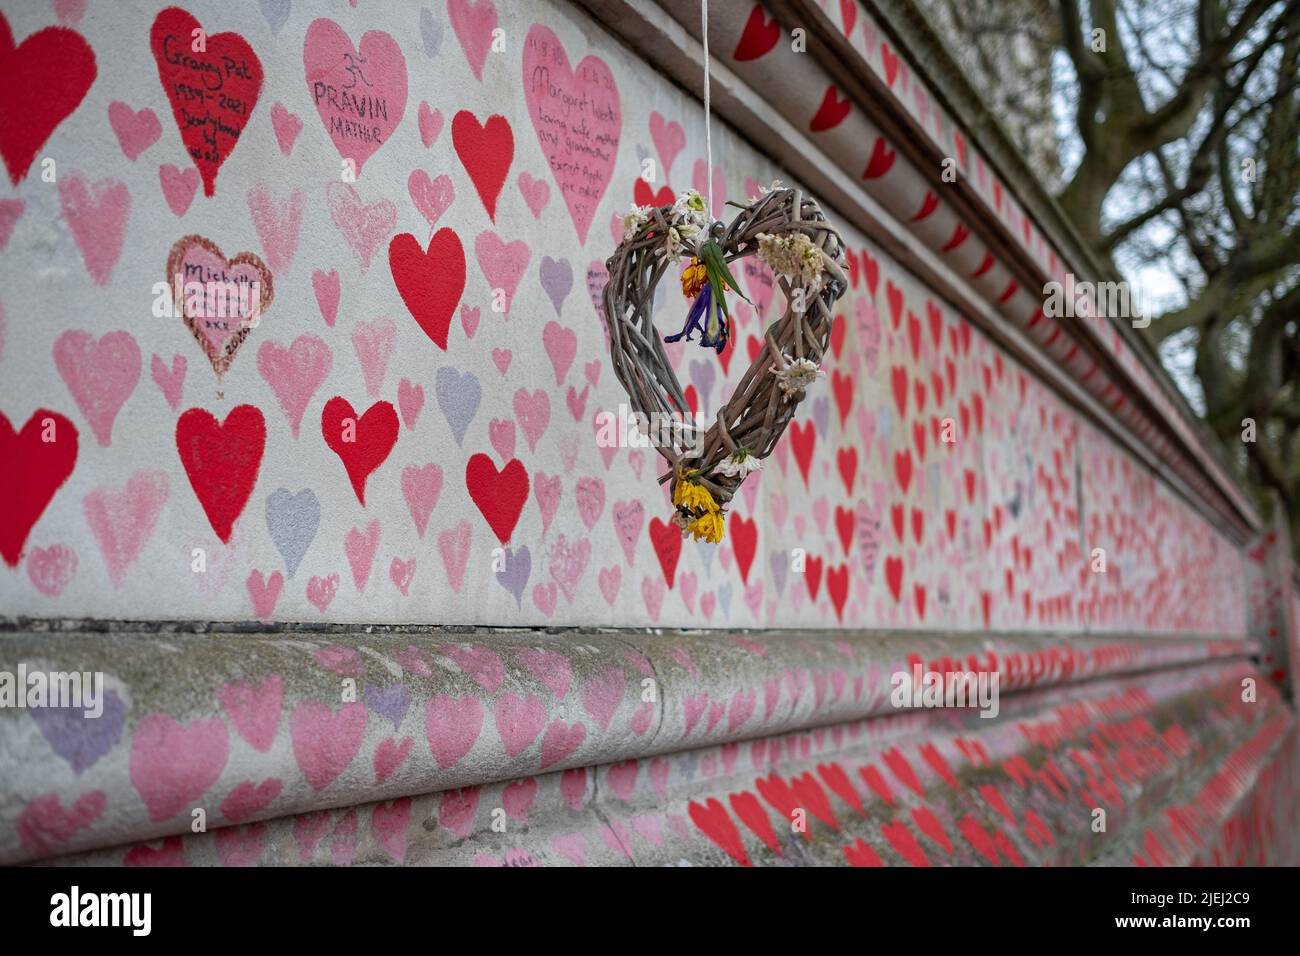 El muro conmemorativo nacional cóvido de Londres con un corazón de madera tejido que conmemora a una de las víctimas de la pandemia. South Bank, Londres, Reino Unido. Foto de stock